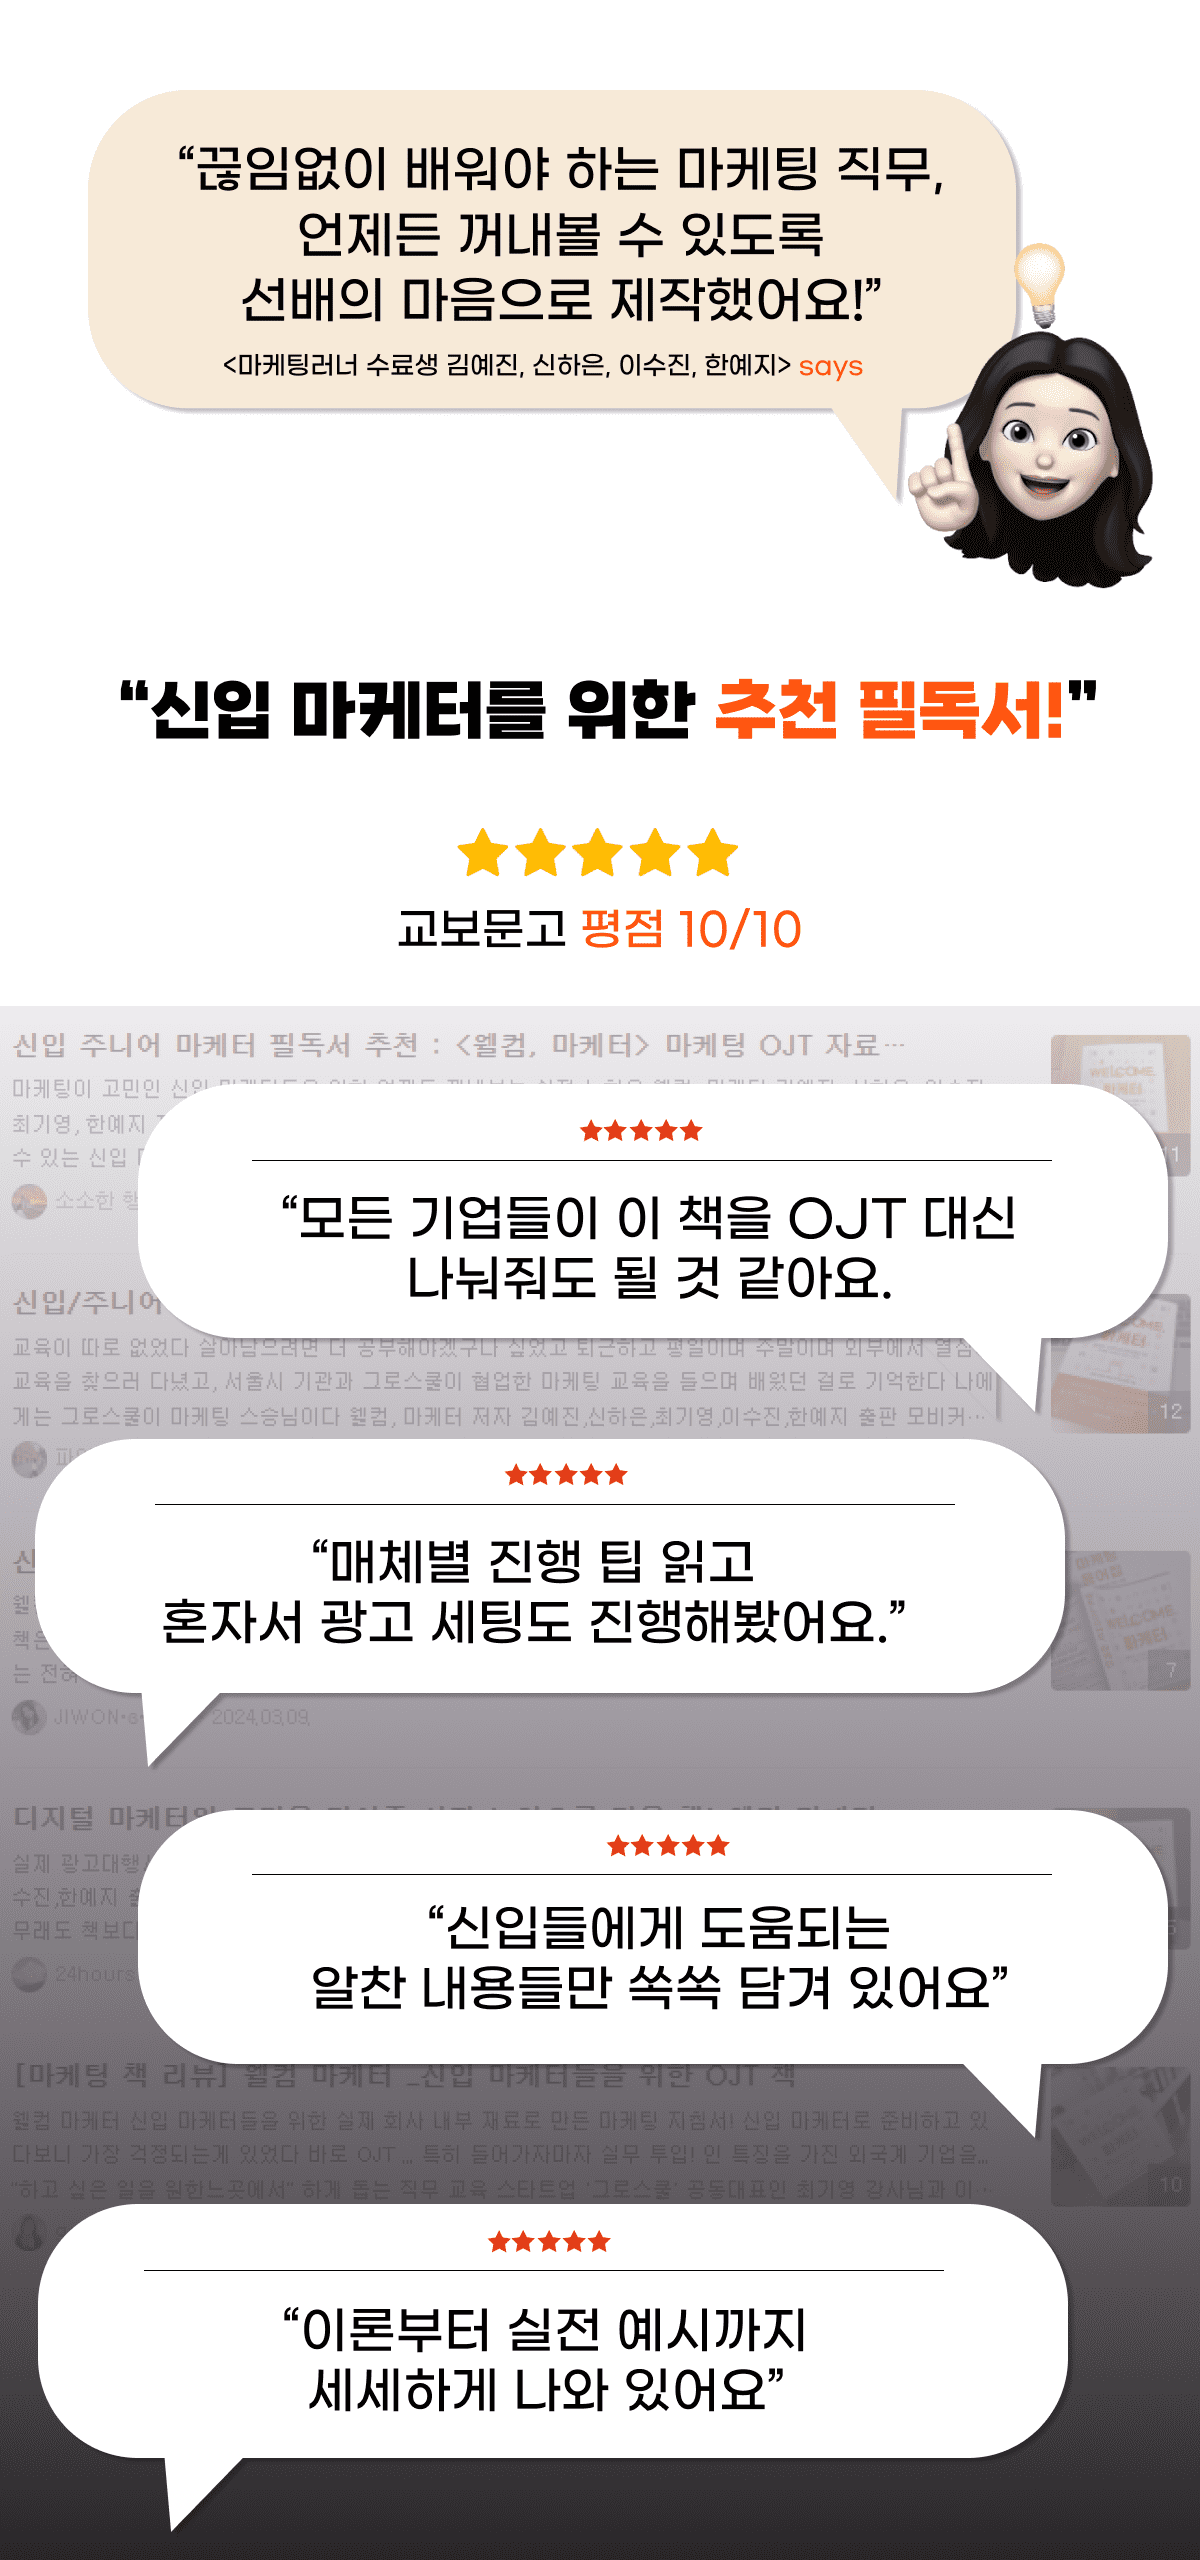 서평후기모음-선배의마음으로제작-교보추천필독서-OJT대신-별점5개